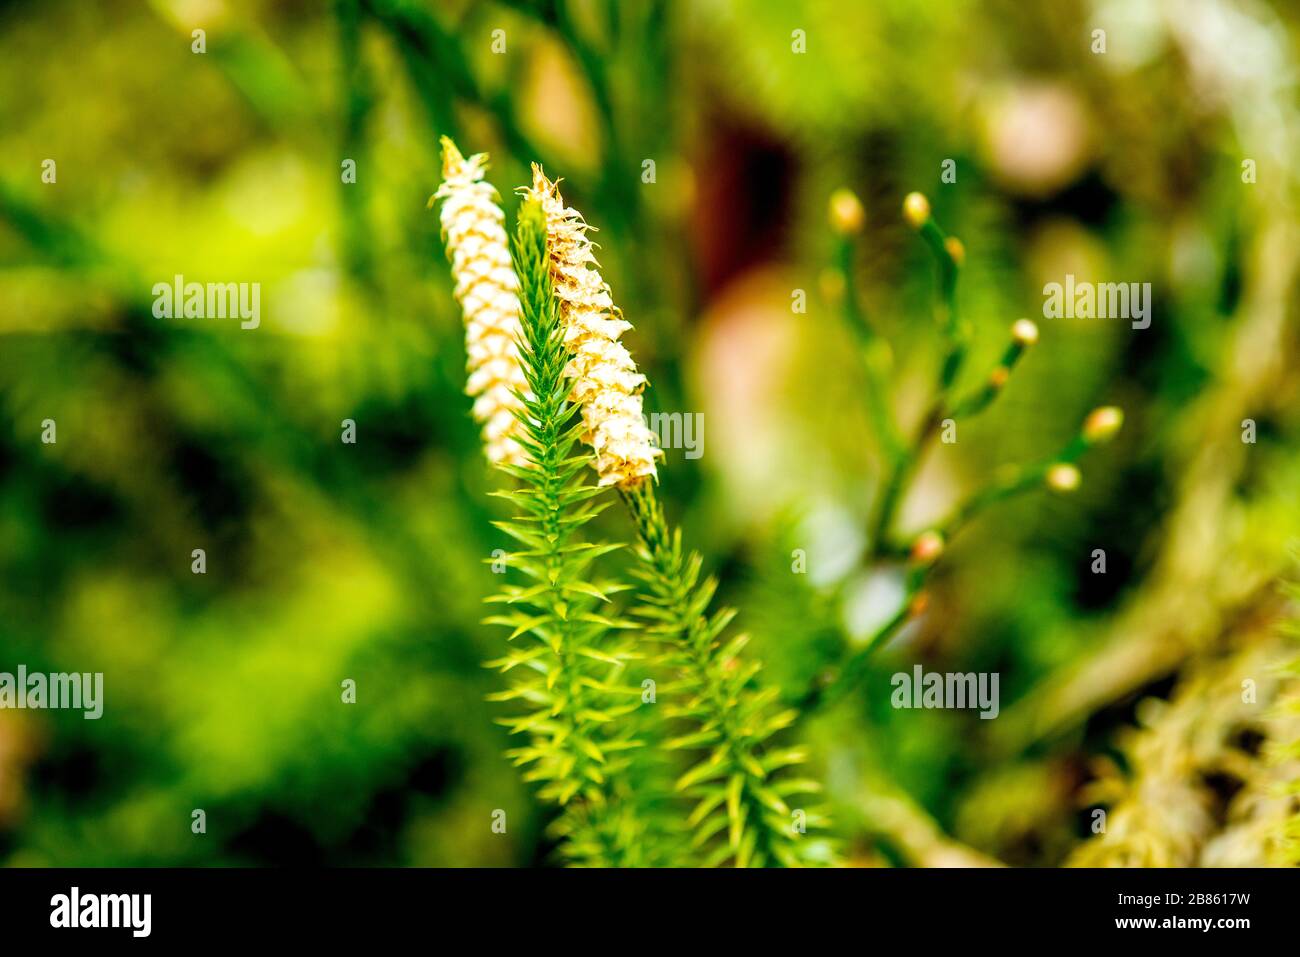 Huperzia, fir moss, medicinal plant in a forest Stock Photo